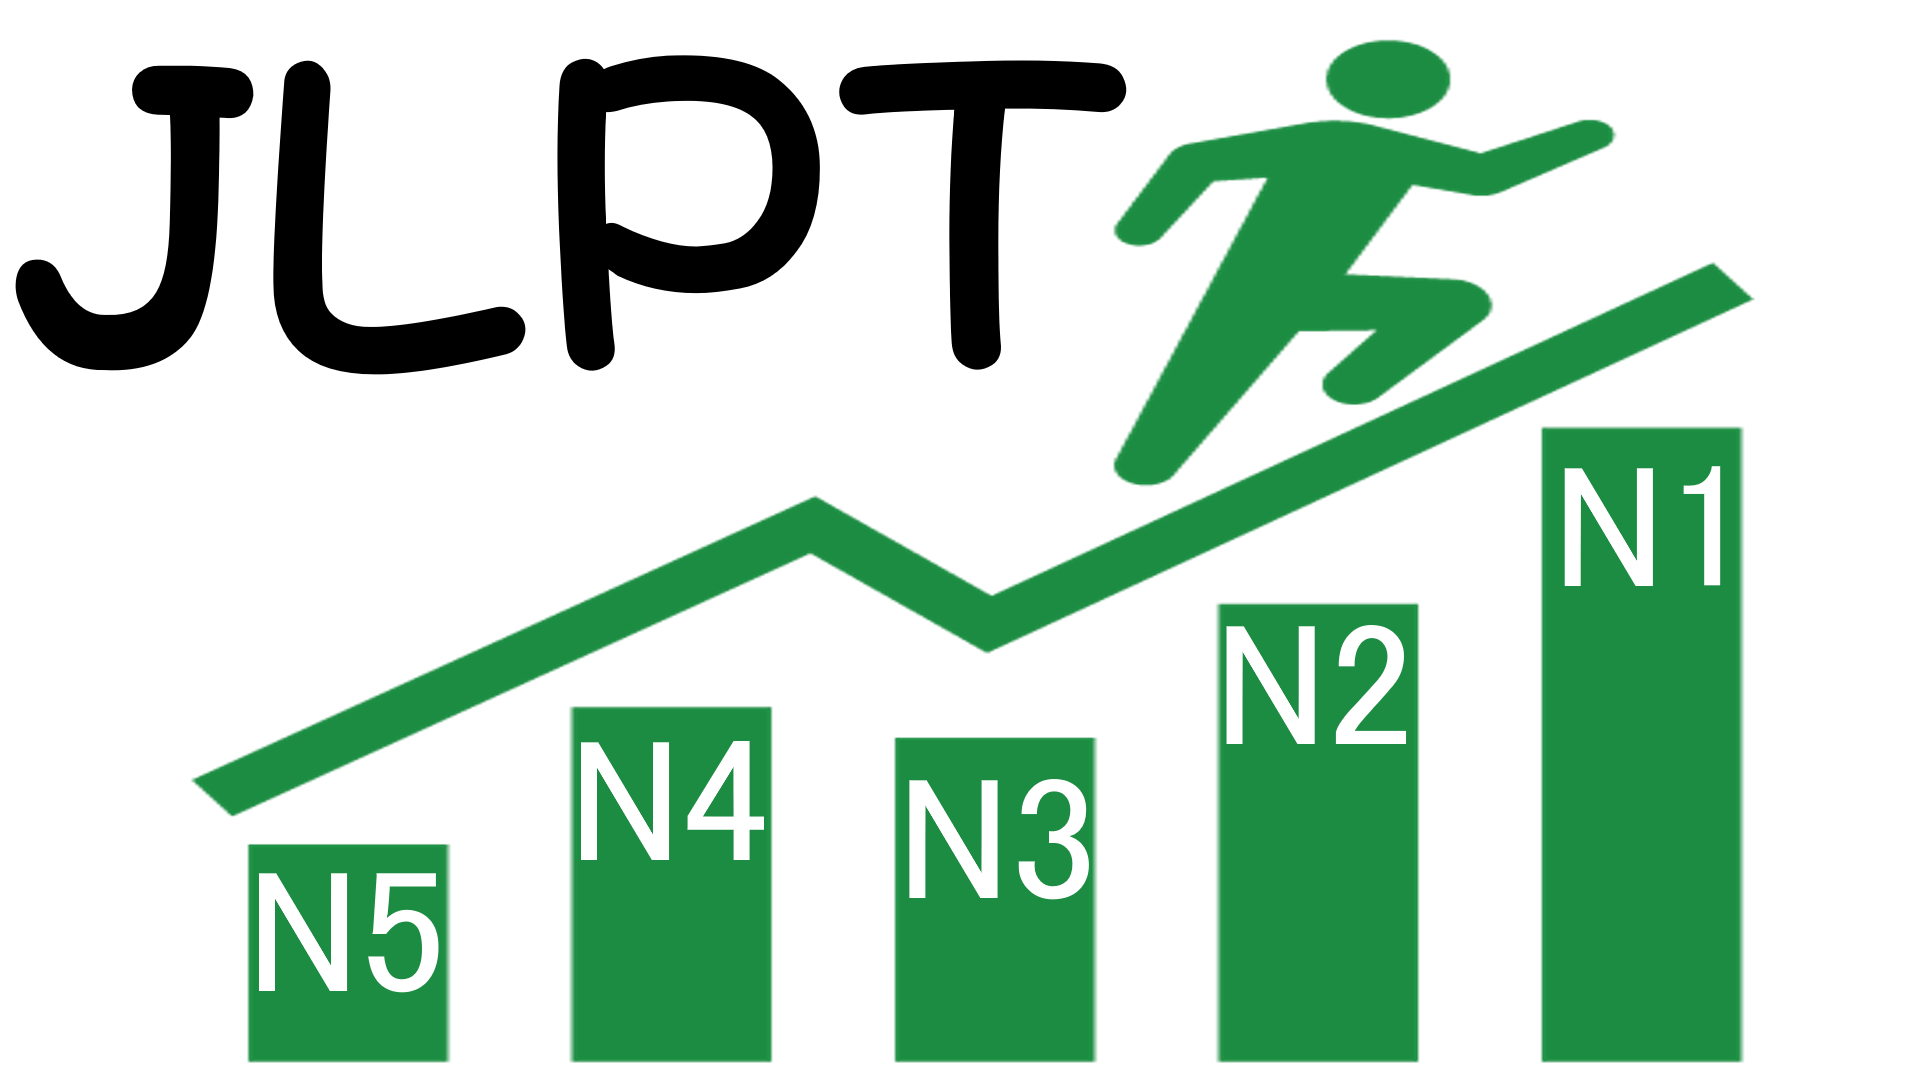 7 kinh nghiệm học và ôn thi JLPT mọi trình độ các bạn cần biết!